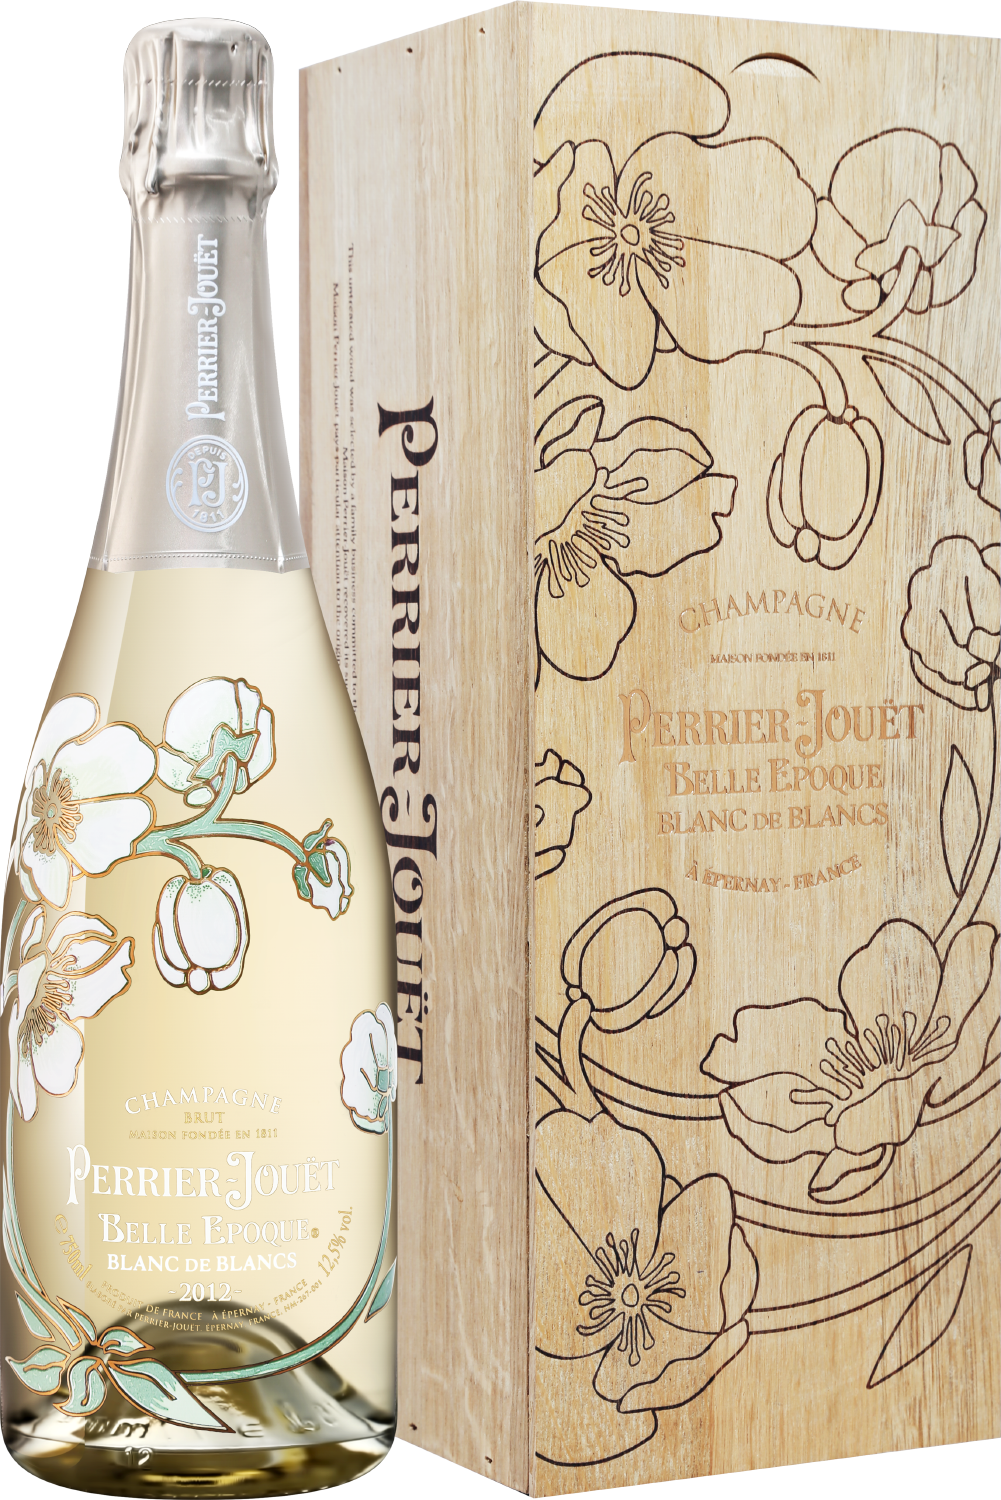 Perrier-Jouet Belle Epoque Blanc de Blancs 2012 Champagne AOC Brut (gift box) perrier jouёt belle epoque brut champagne aoc gift box